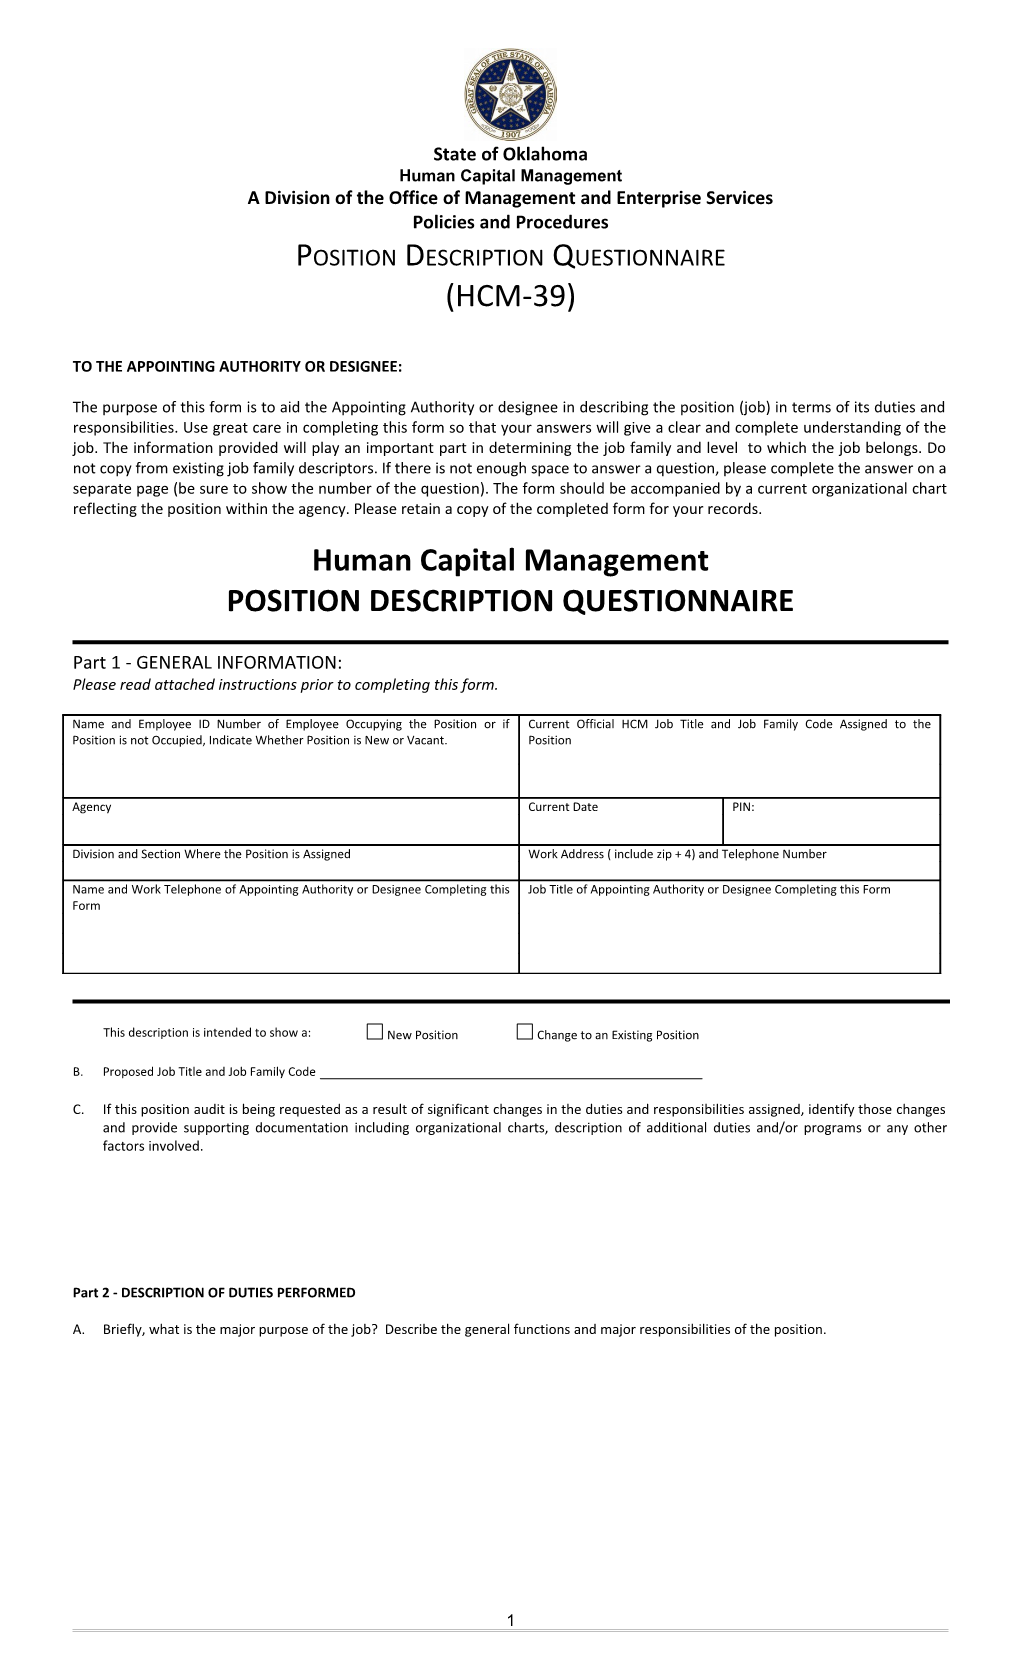 Position Description Questionnaire HCM-39